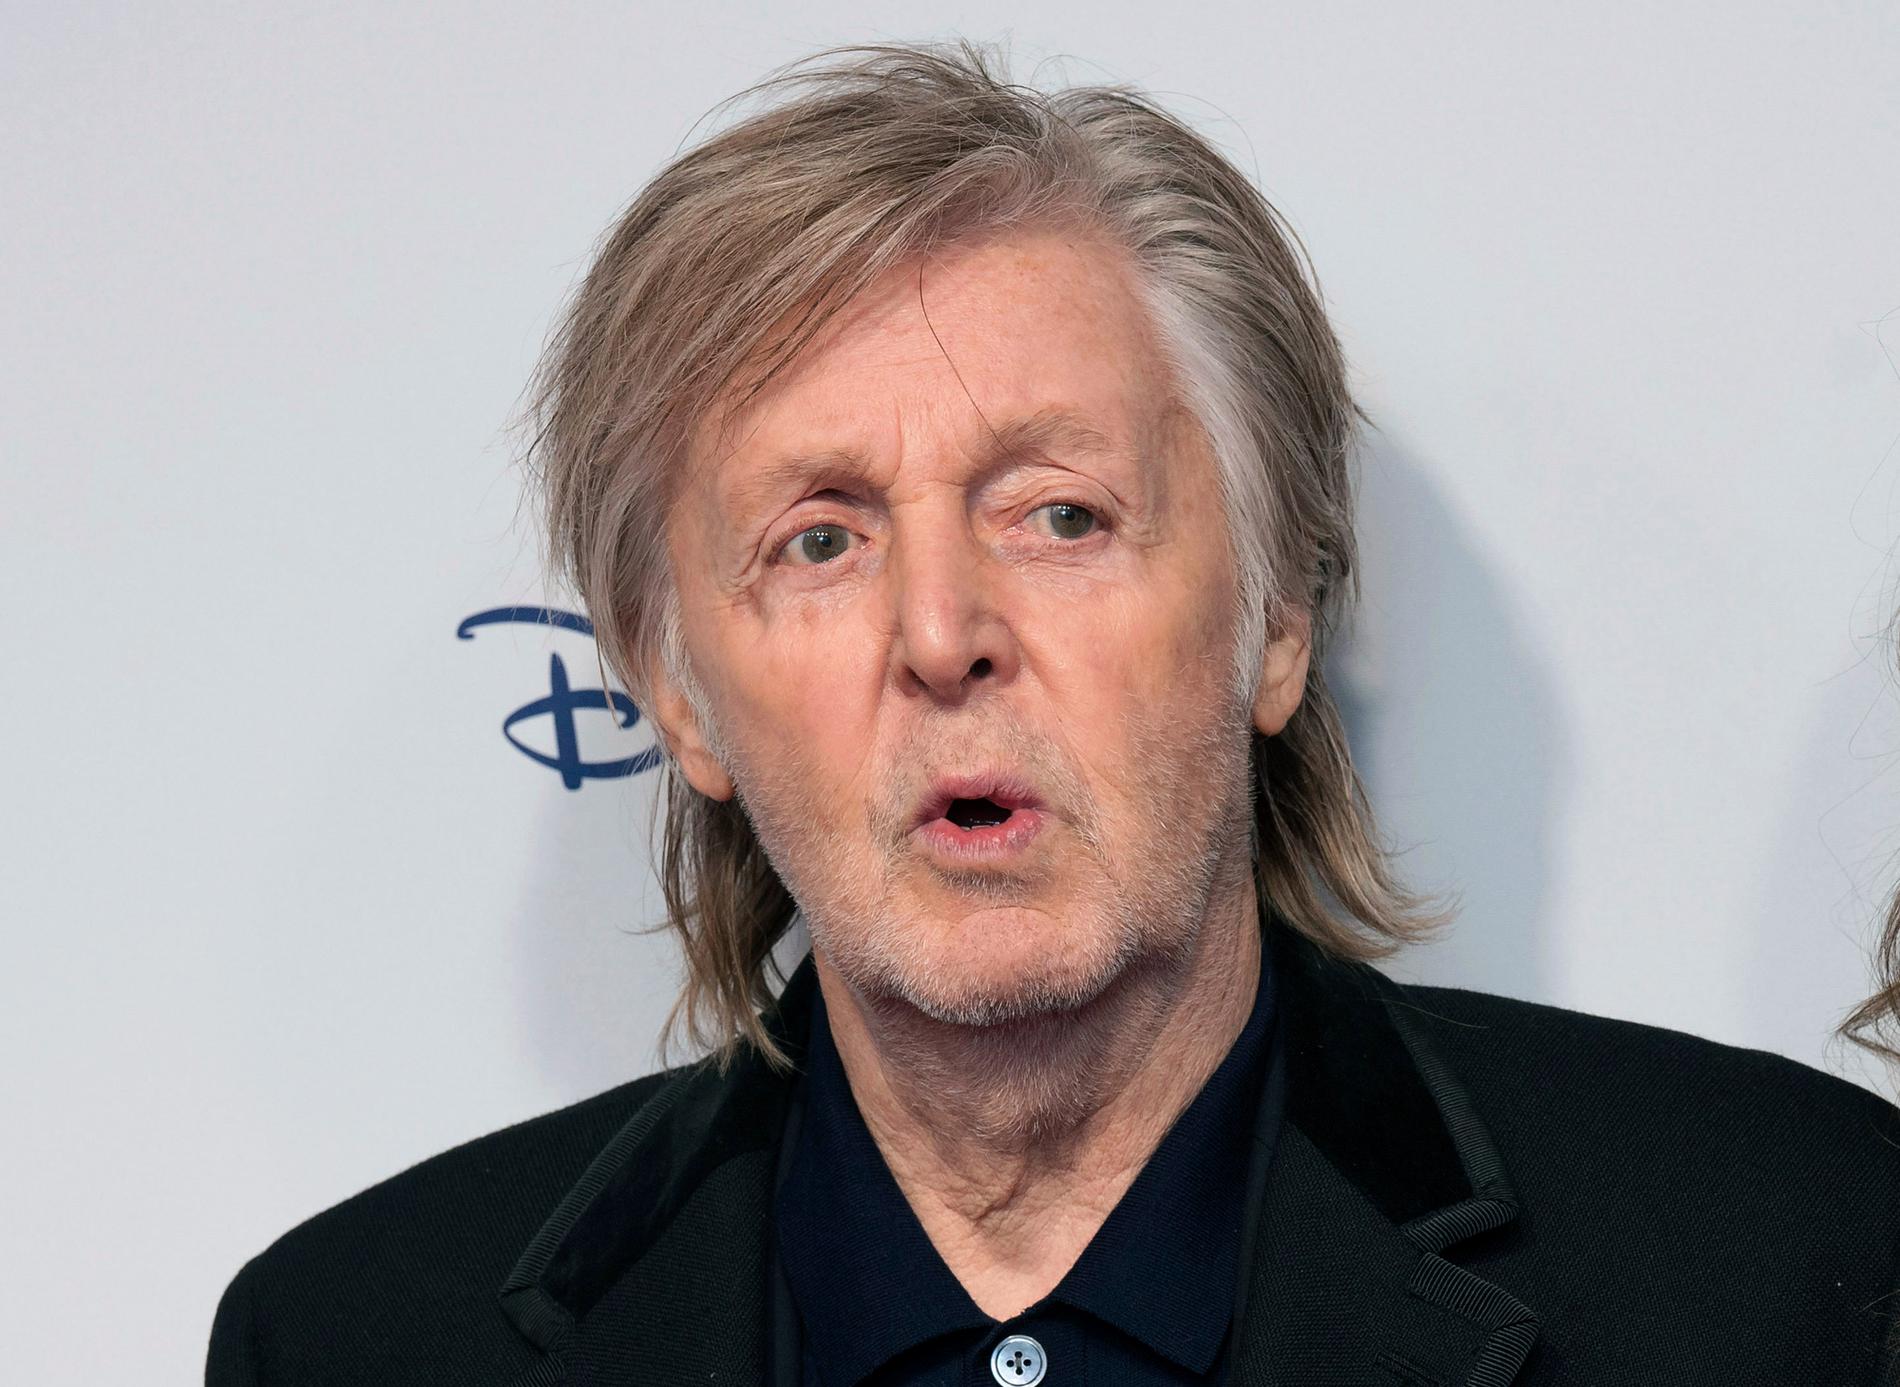 Paul McCartney berättar i en intervju att han med hjälp av artificiell intelligens har lyckats "extrahera" John Lennons röst från en gammal demokassett. Arkivbild.